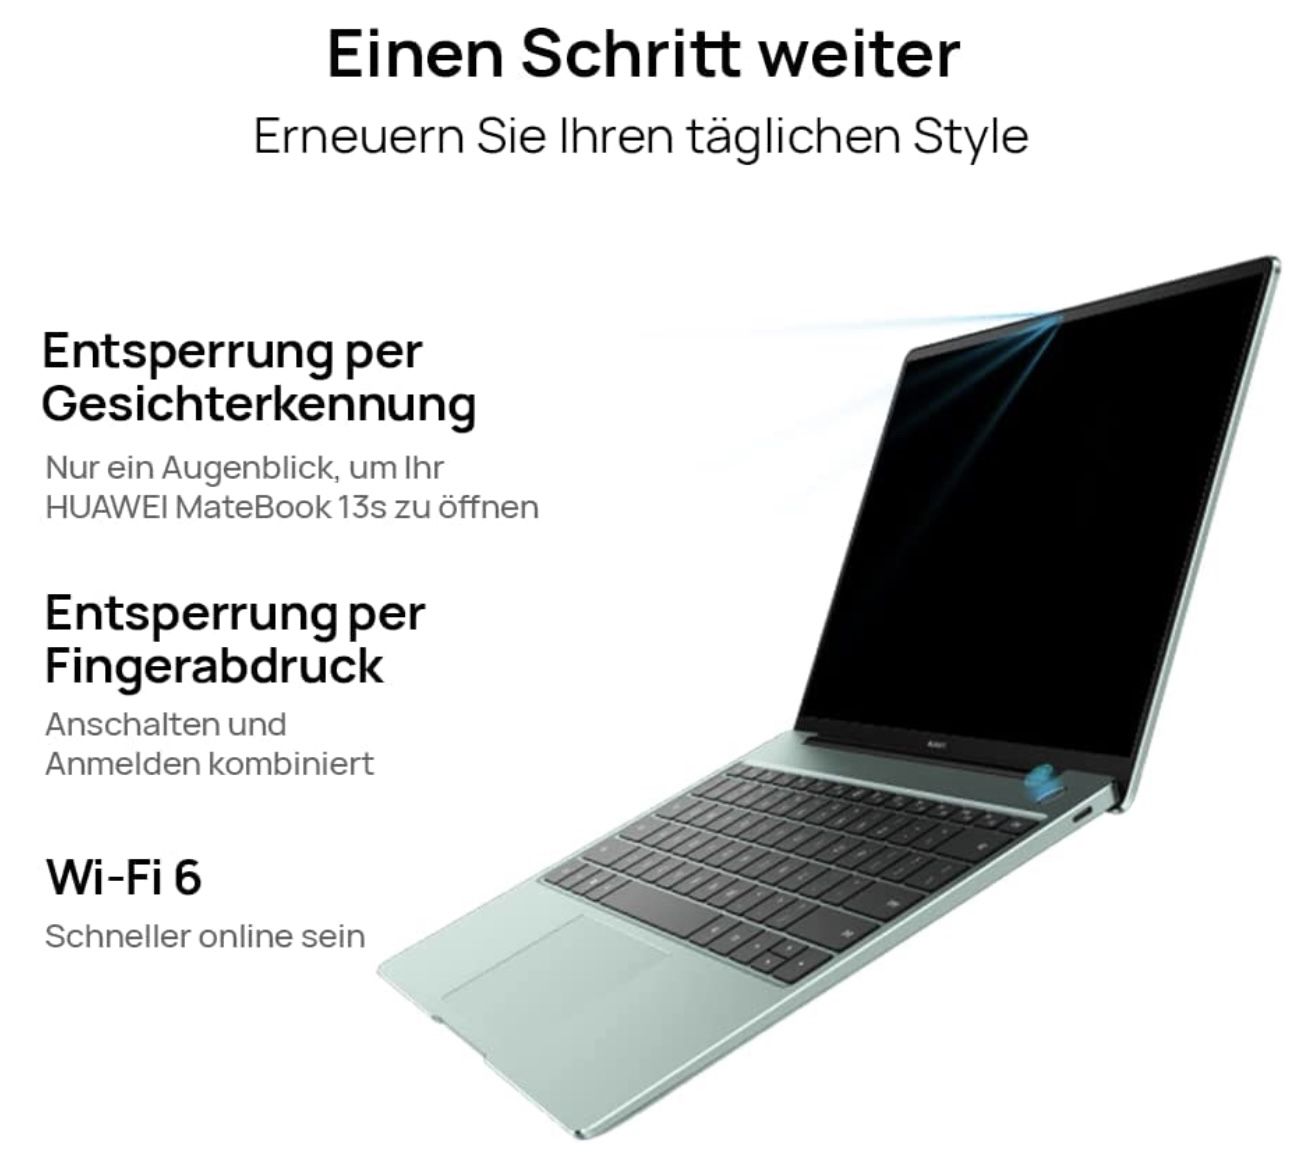 HUAWEI MateBook 13s Laptop mit 13 Zoll, 512GB & Touch Display für 999€ (statt 1.100€)